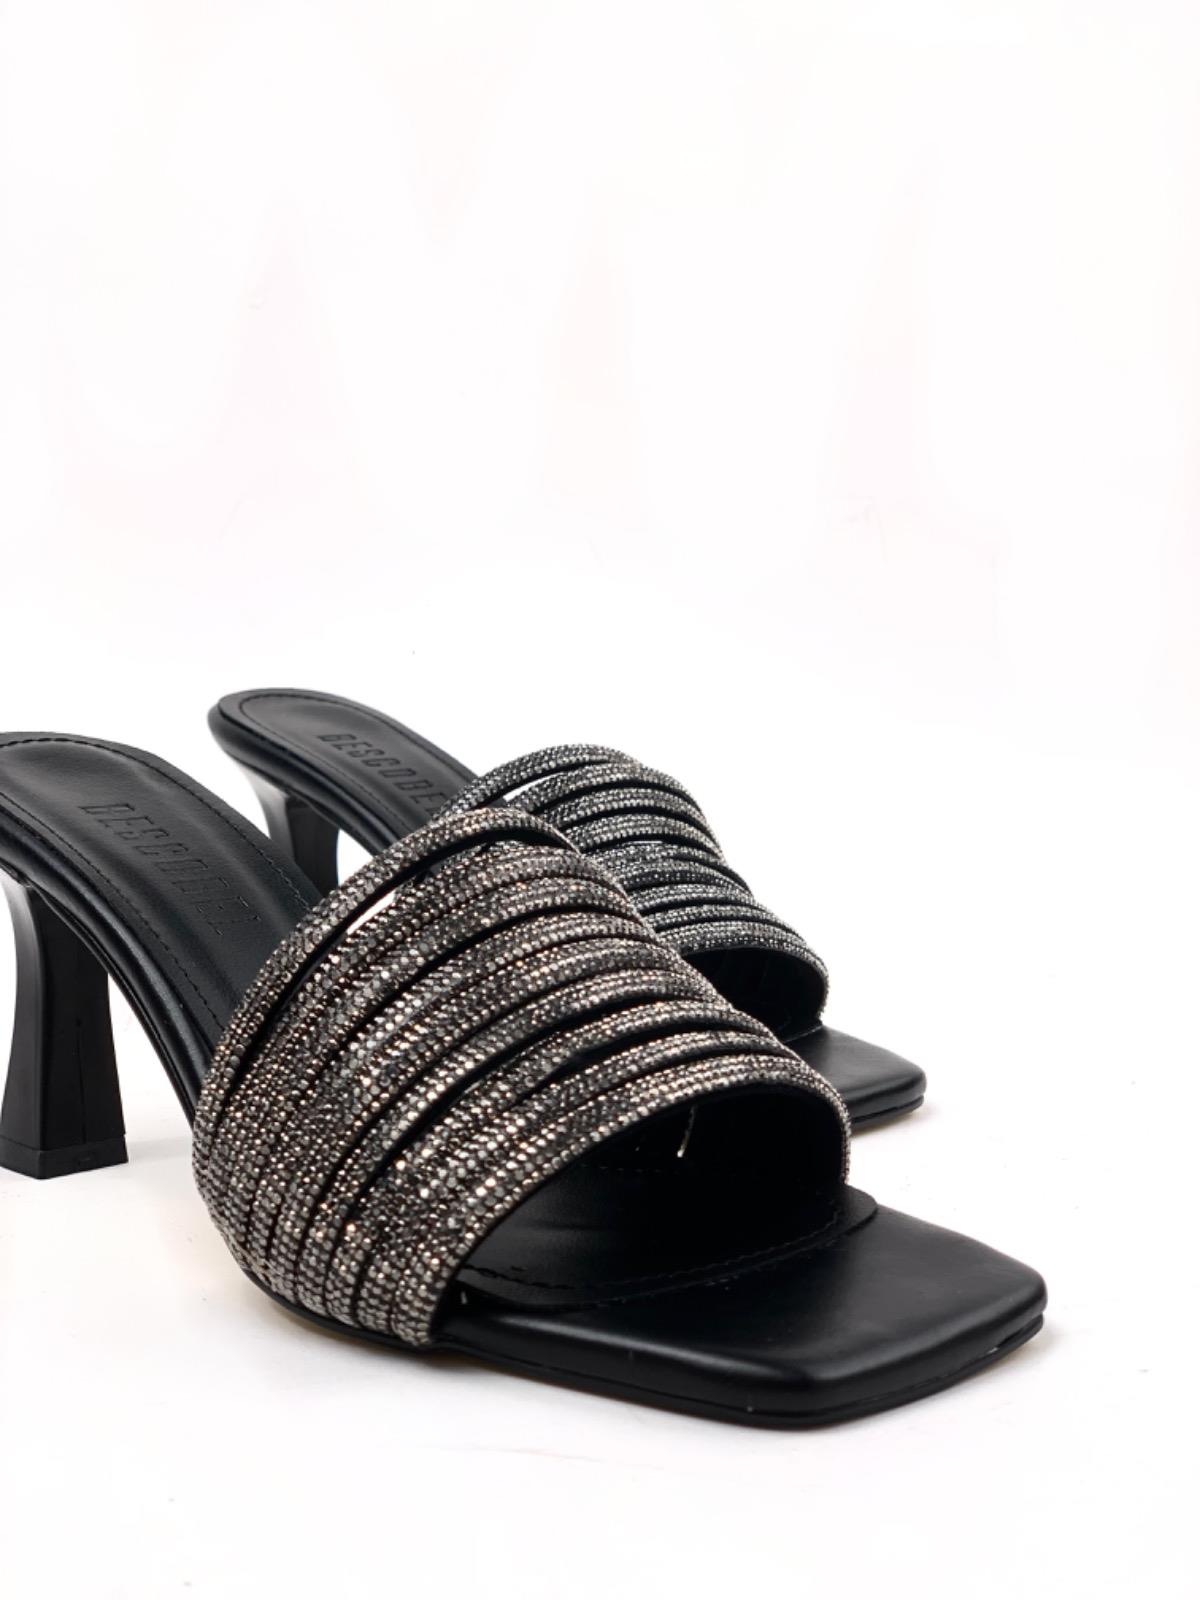 Women's Black Yeft Multi-Stone Evening Dress Slippers